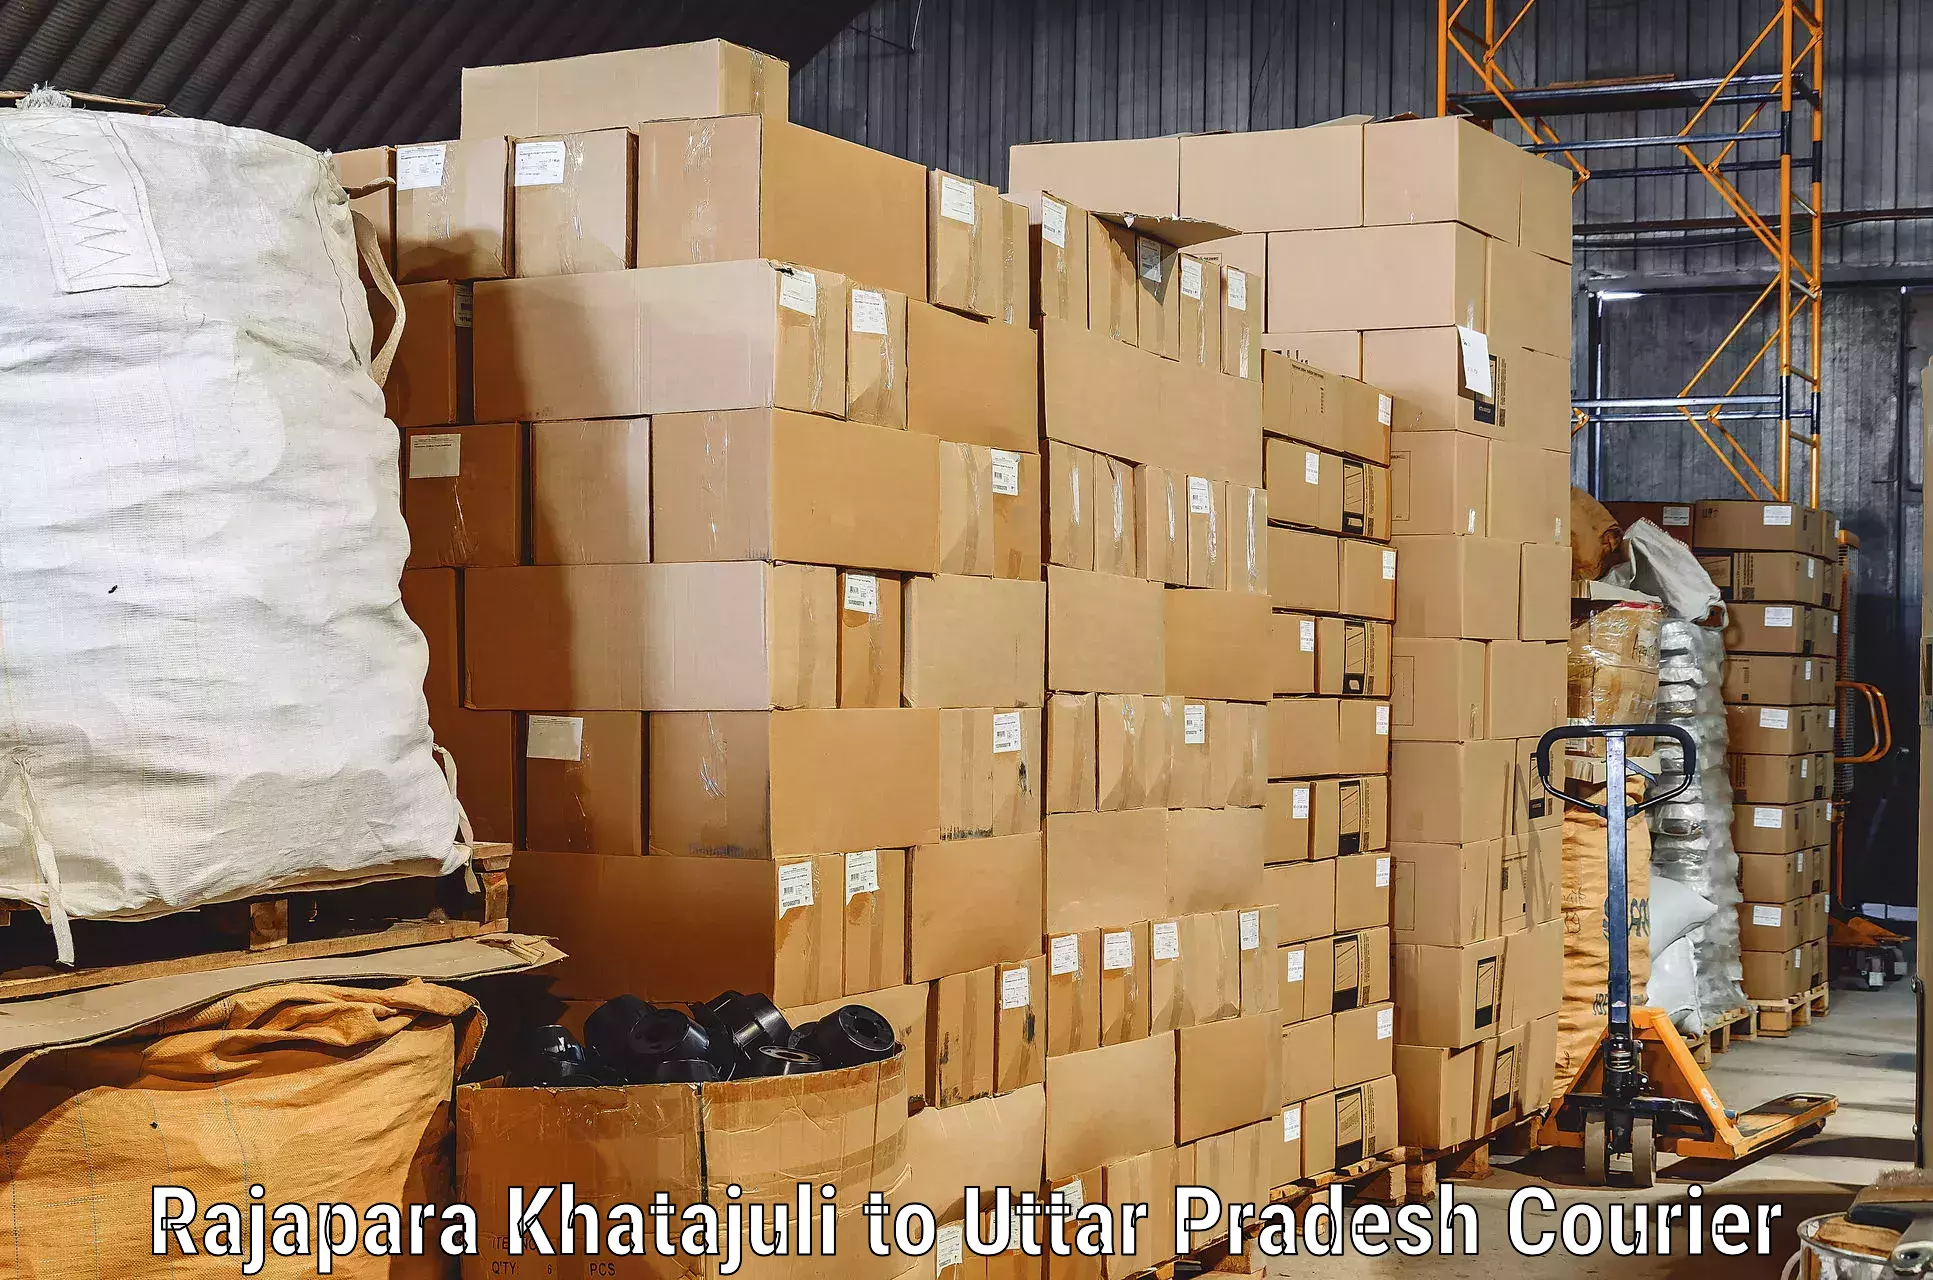 Furniture moving experts Rajapara Khatajuli to Sitapur